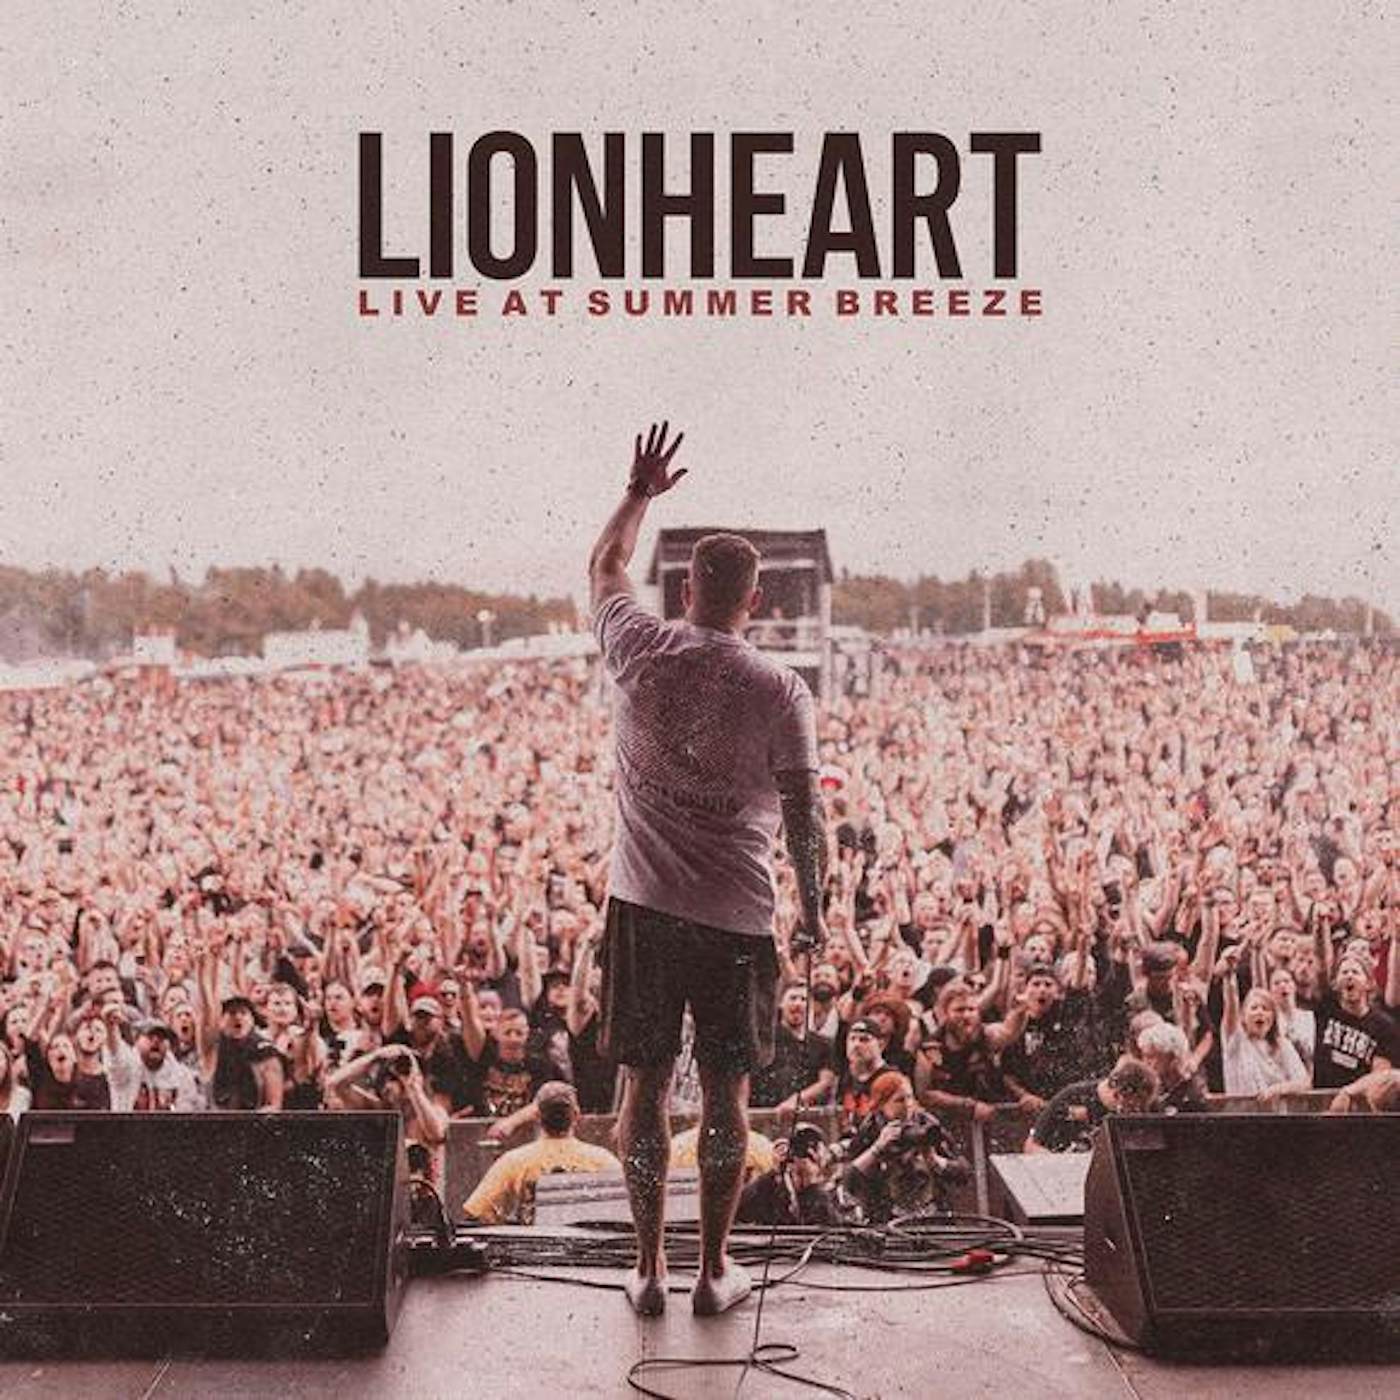 Lionheart Live at Summer Breeze Vinyl Record